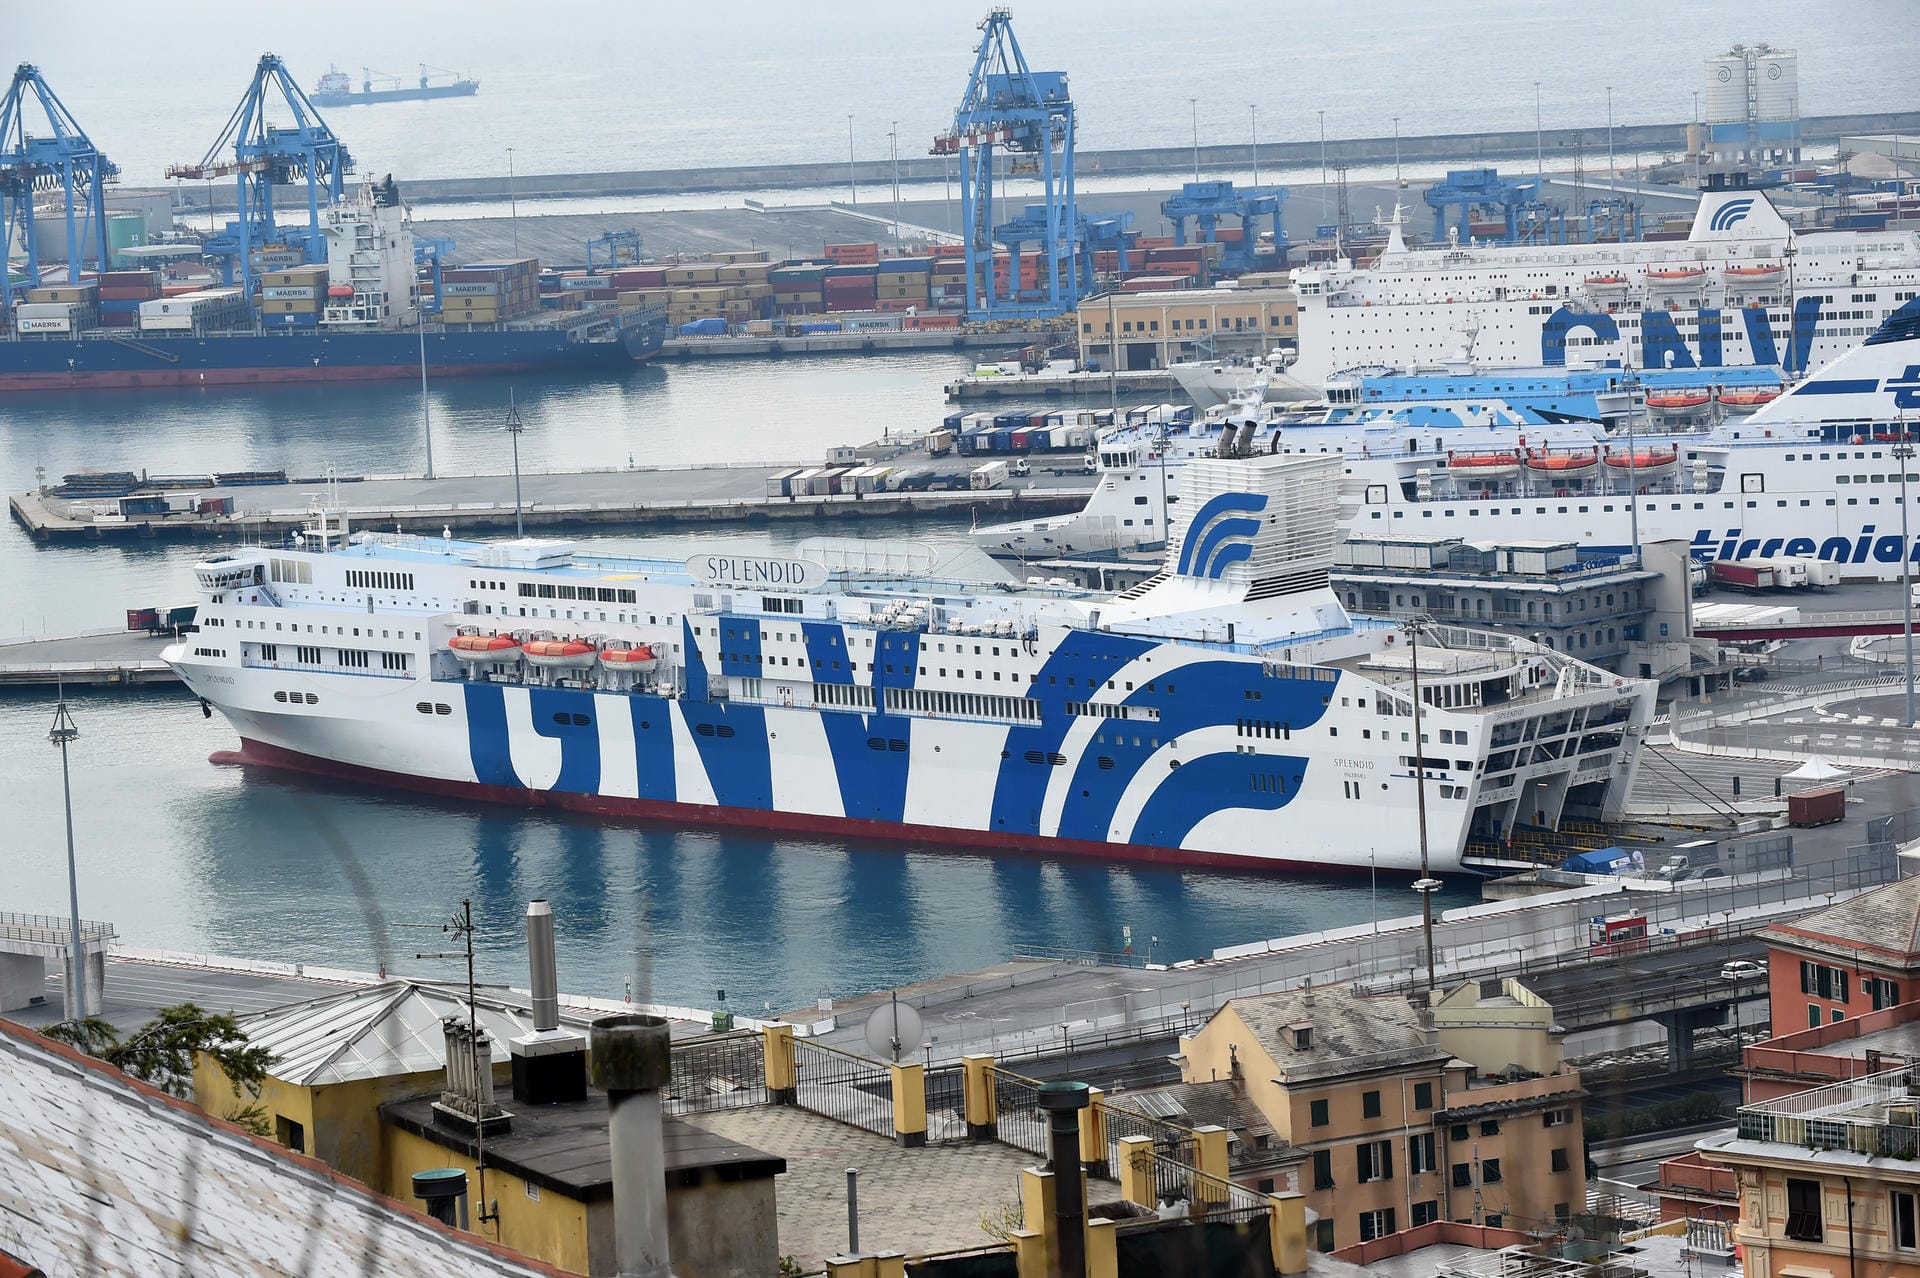 Italien, Genua: Das Kreuzfahrtschiff "Splendid" wurde zu einem mobilen Hospital für Corona-Patienten umfunktioniert.